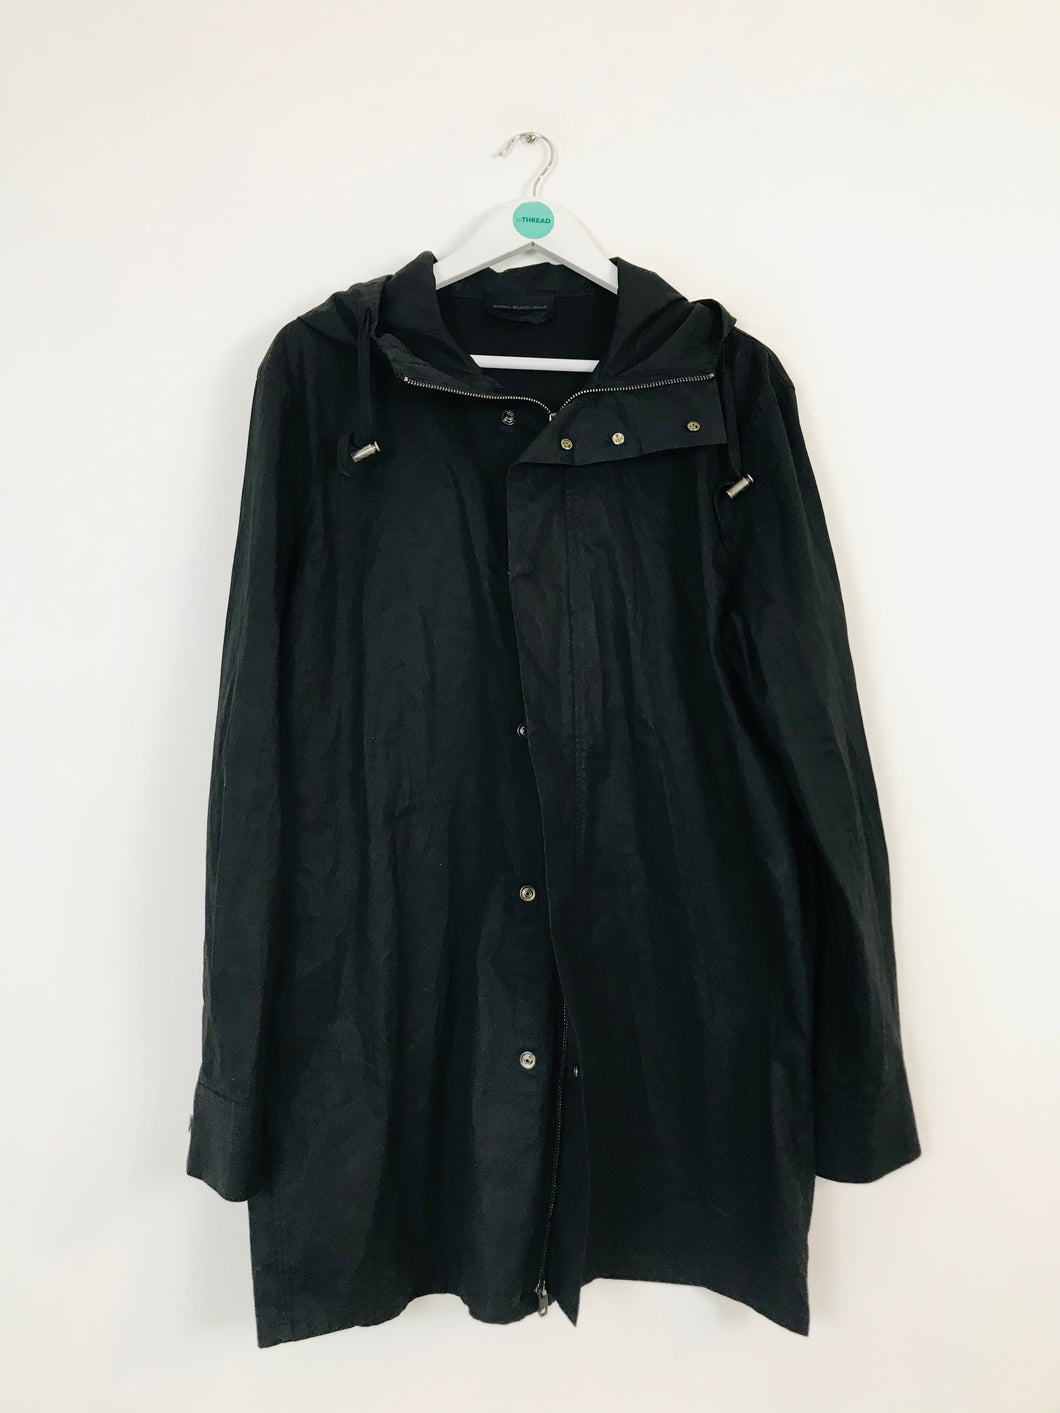 Diesel Black Gold Women’s Hooded Anorak Jacket | 48 UK16 | Black